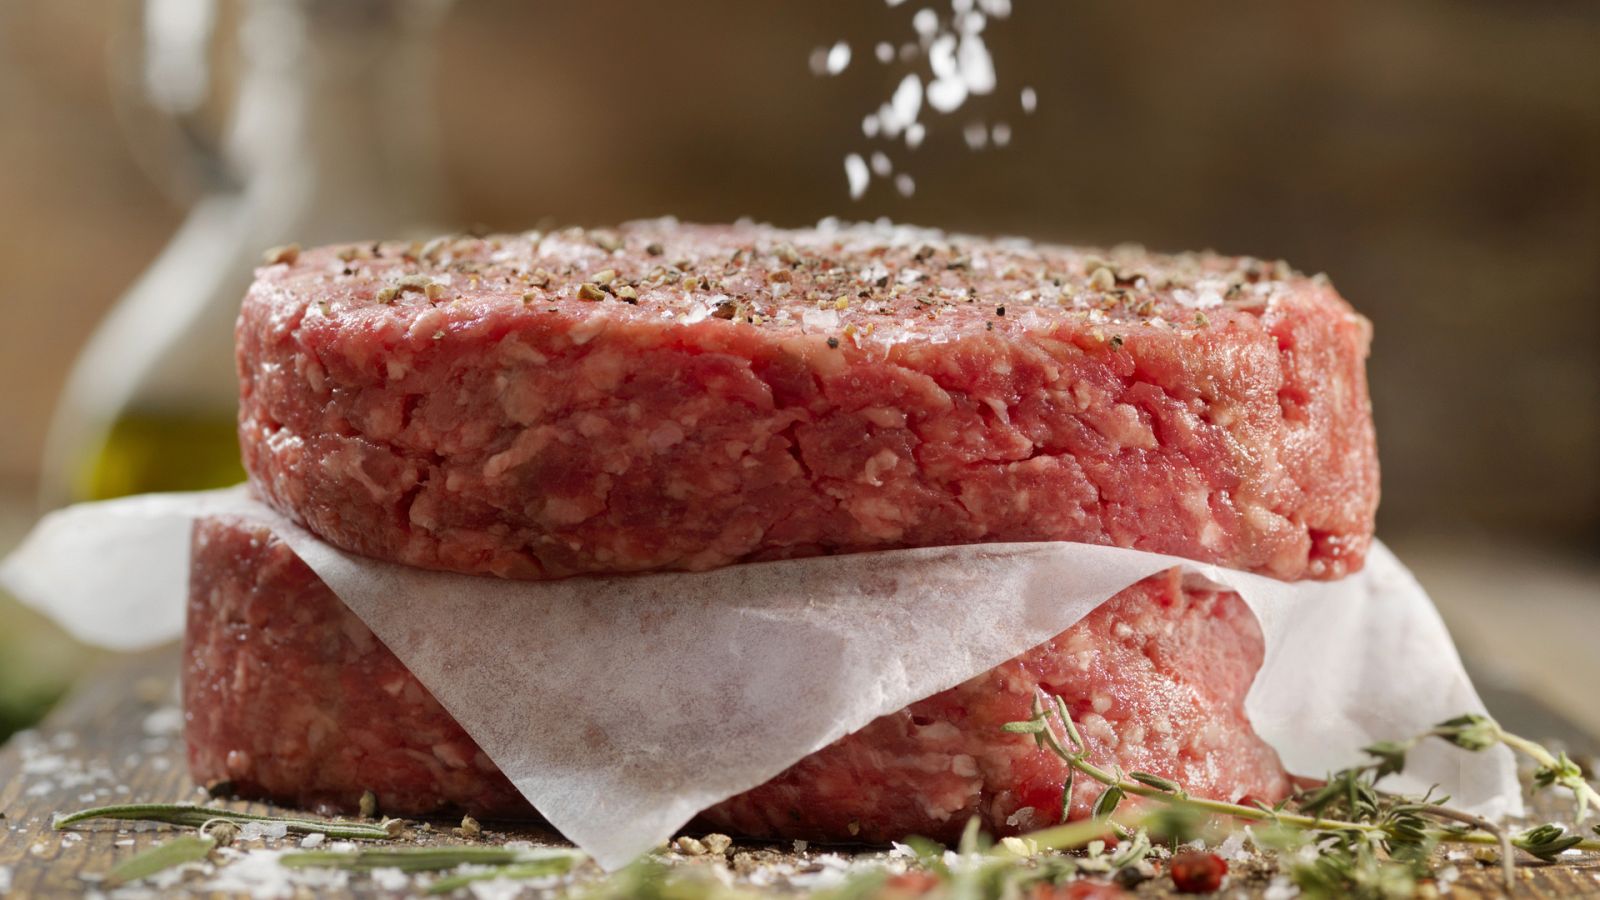 La Hora de la 1 - ¿Cómo podemos conservar mejor la carne picada?